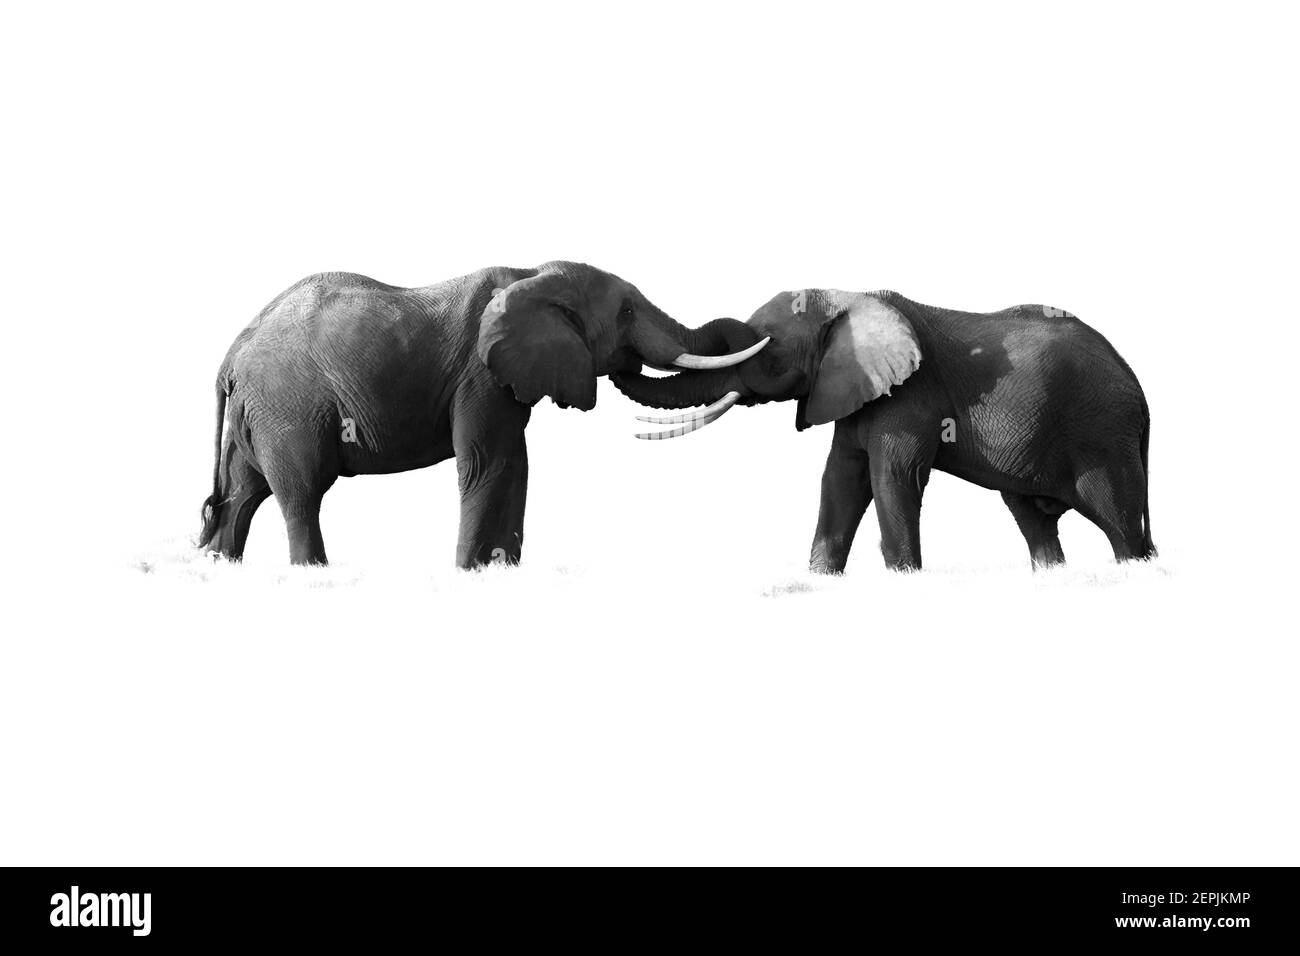 Isoliert auf weißem Hintergrund Schwarz-Weiß-Foto von zwei afrikanischen Elefanten, Loxodonta africana, einander gegenüber, berühren mit Stämmen. Safari. Stockfoto